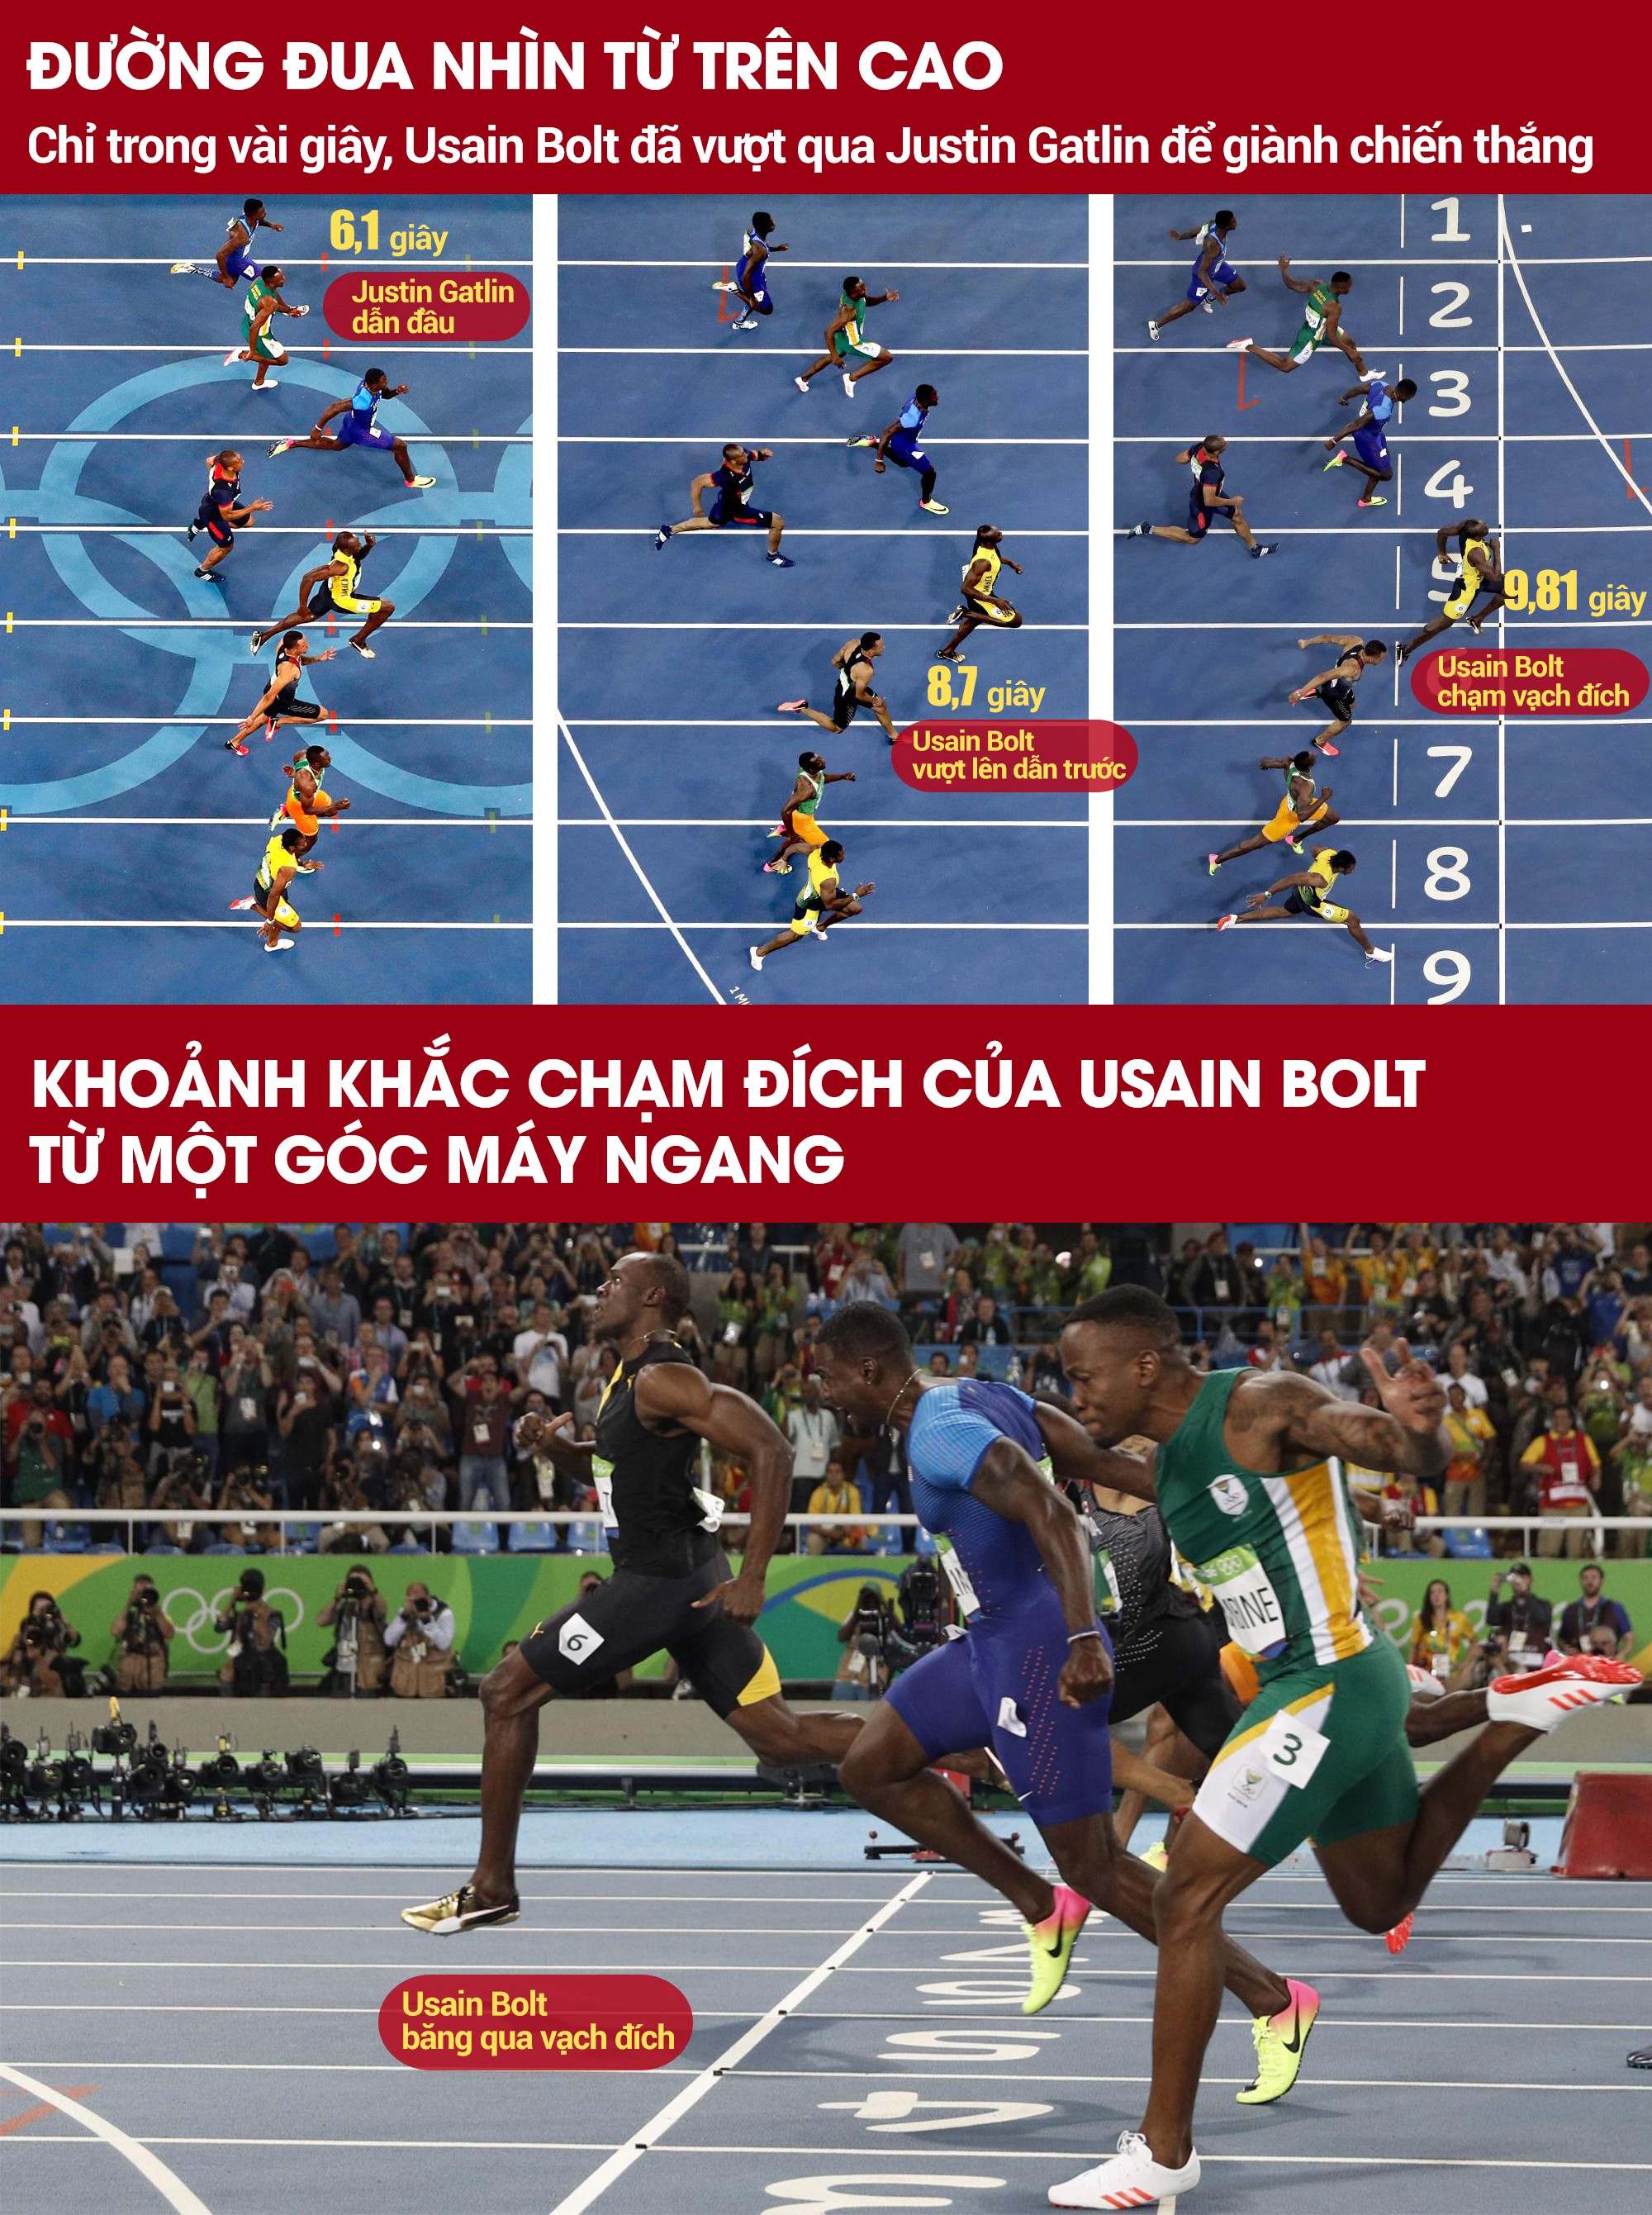 Hành trình tạo nên lịch sử của Usain Bolt từ các góc máy khác nhau.